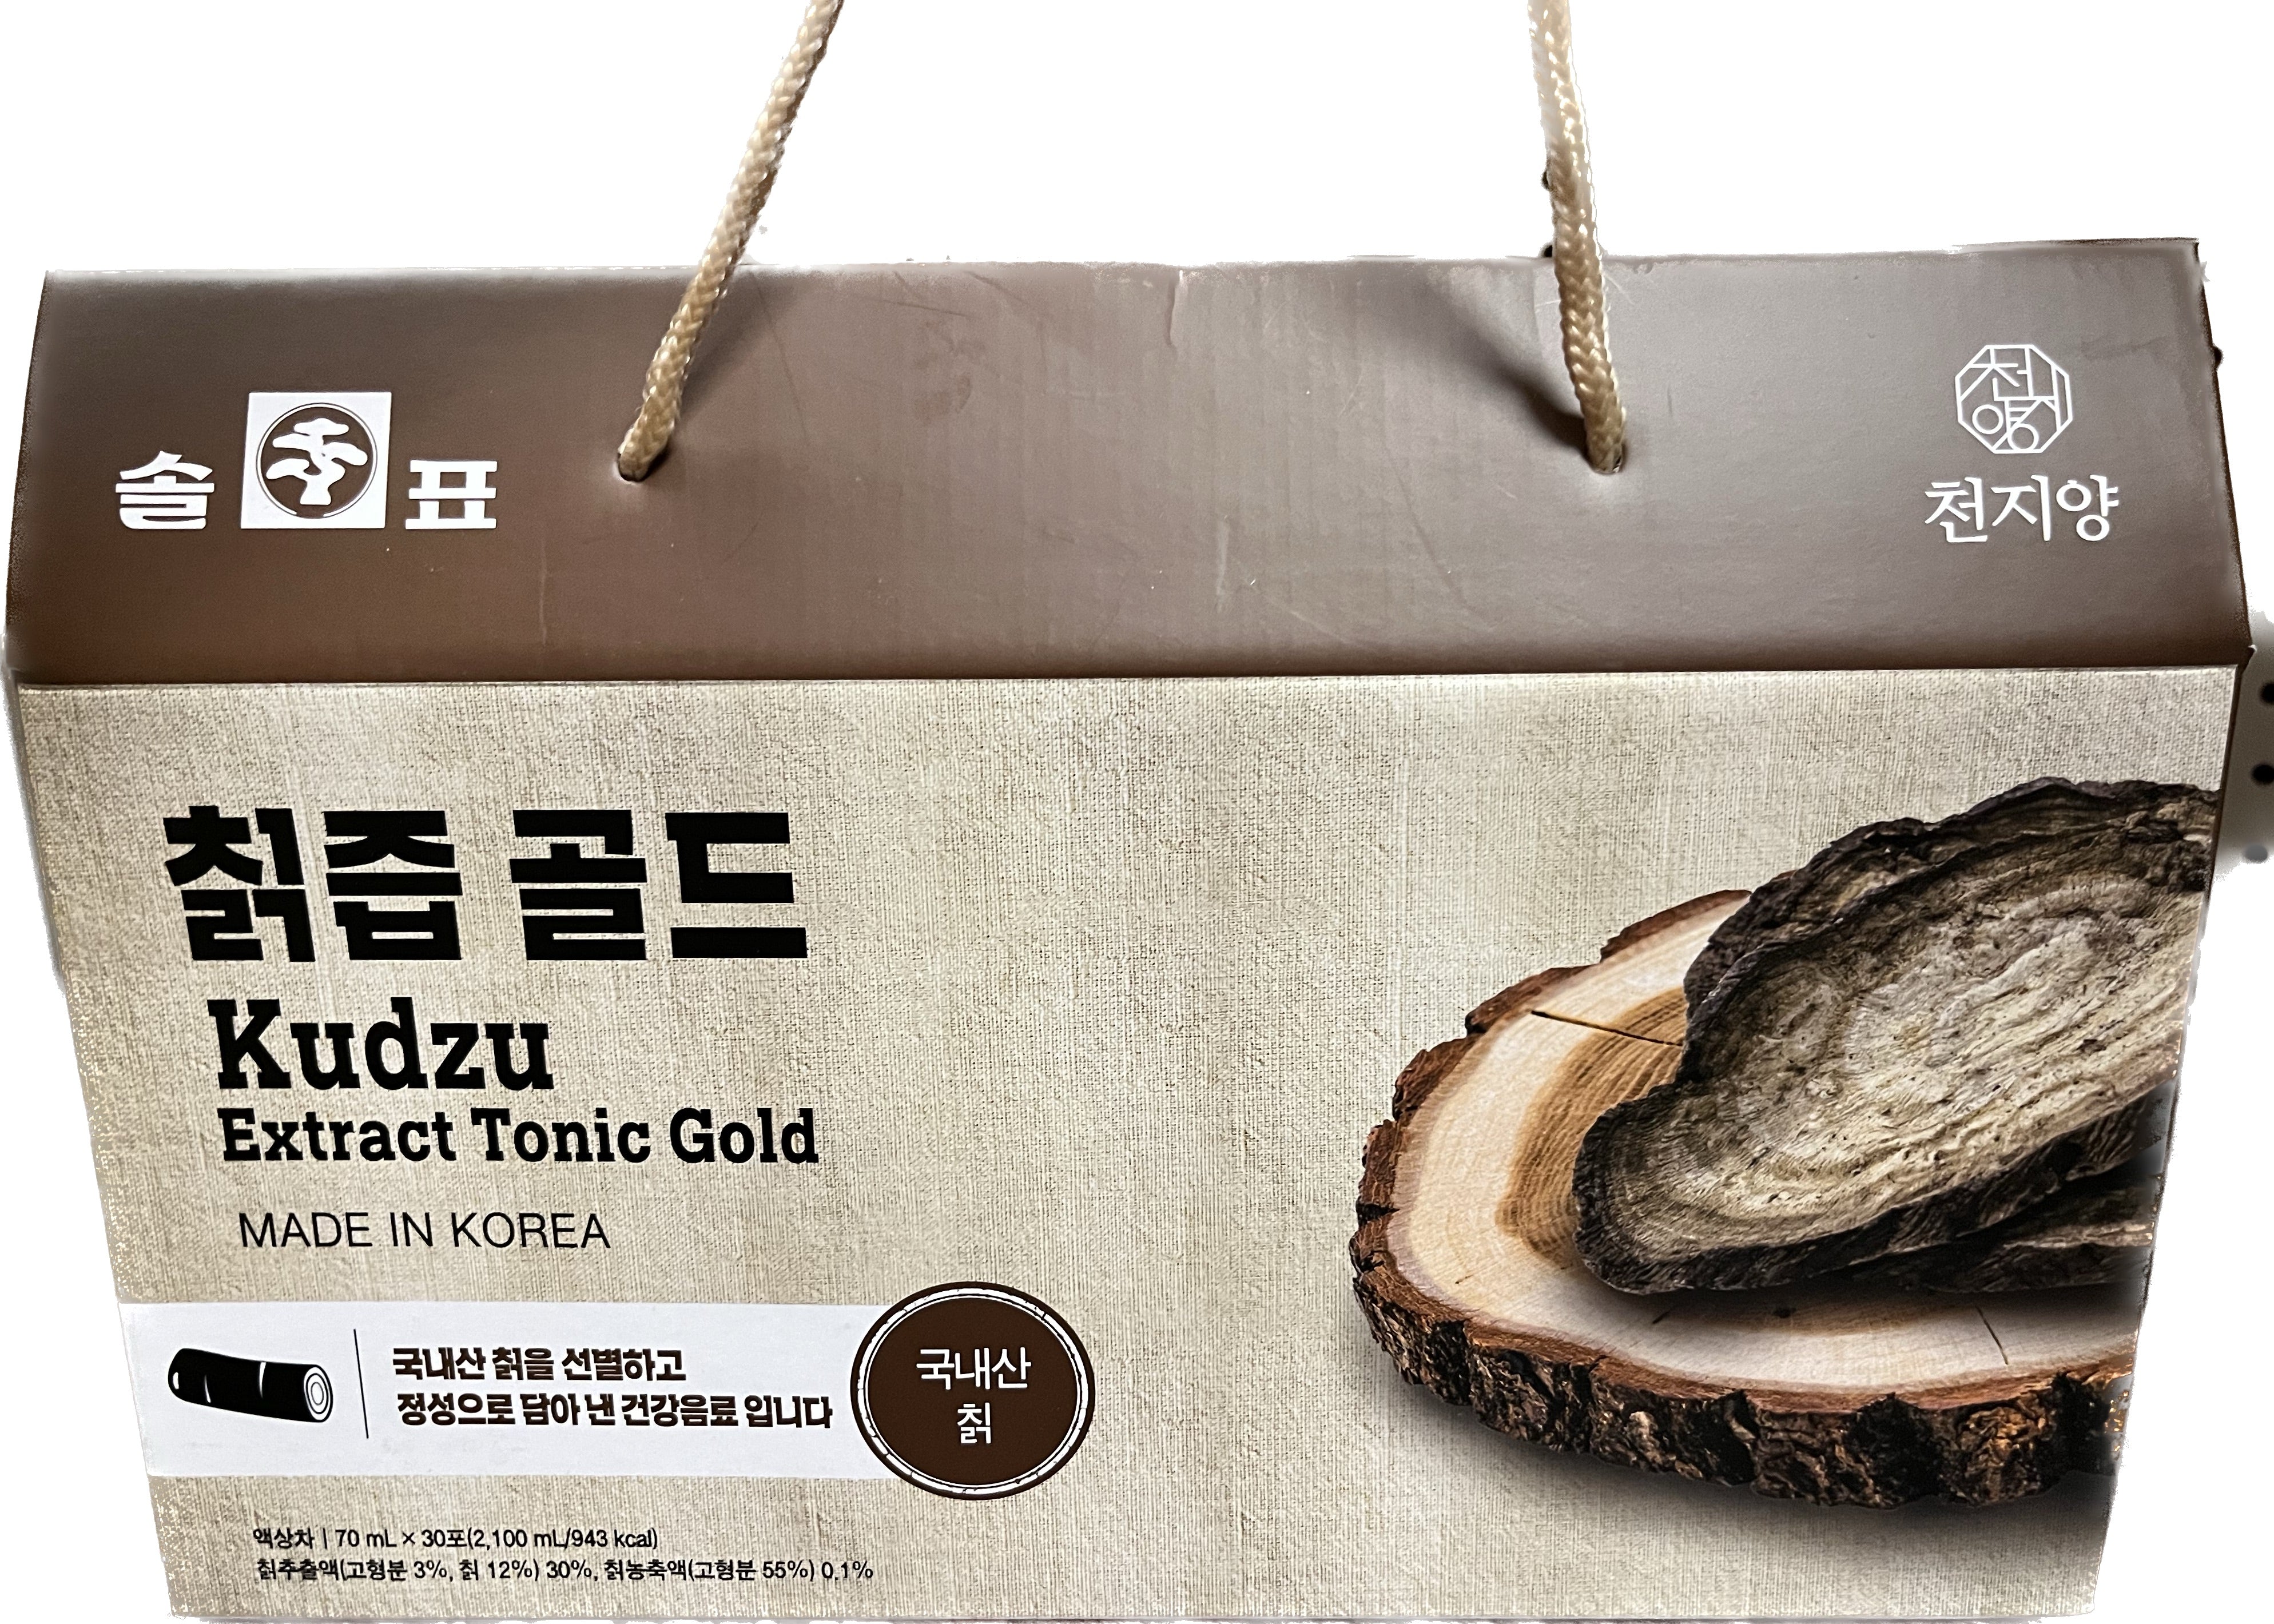 Pine Tree Brand- Kudzu Extract Tonic Gold 70mL x 30